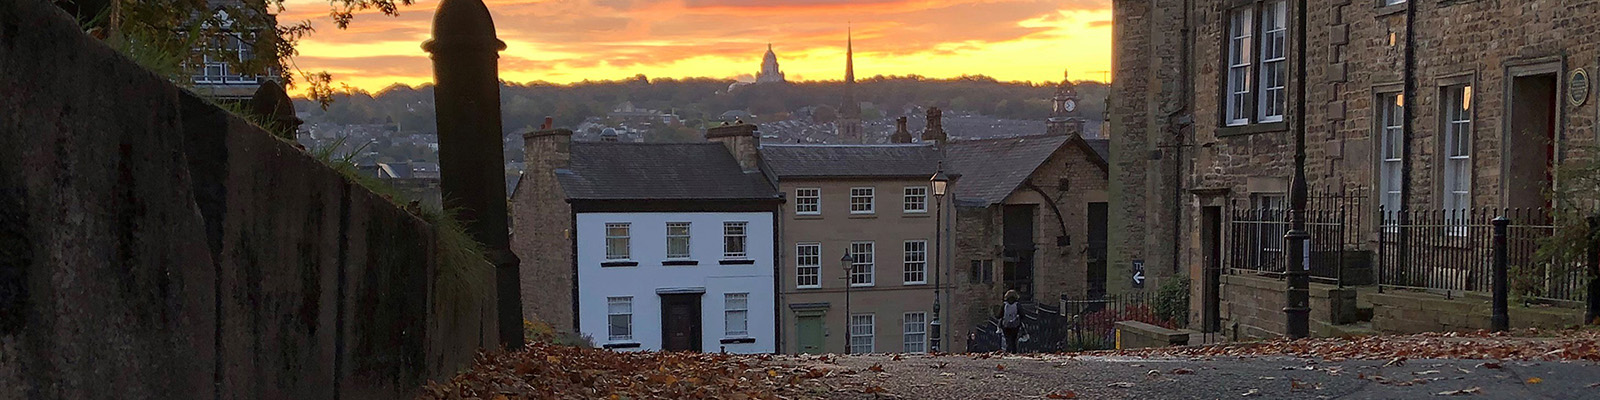 Lancaster city centre at sunrise in autumn